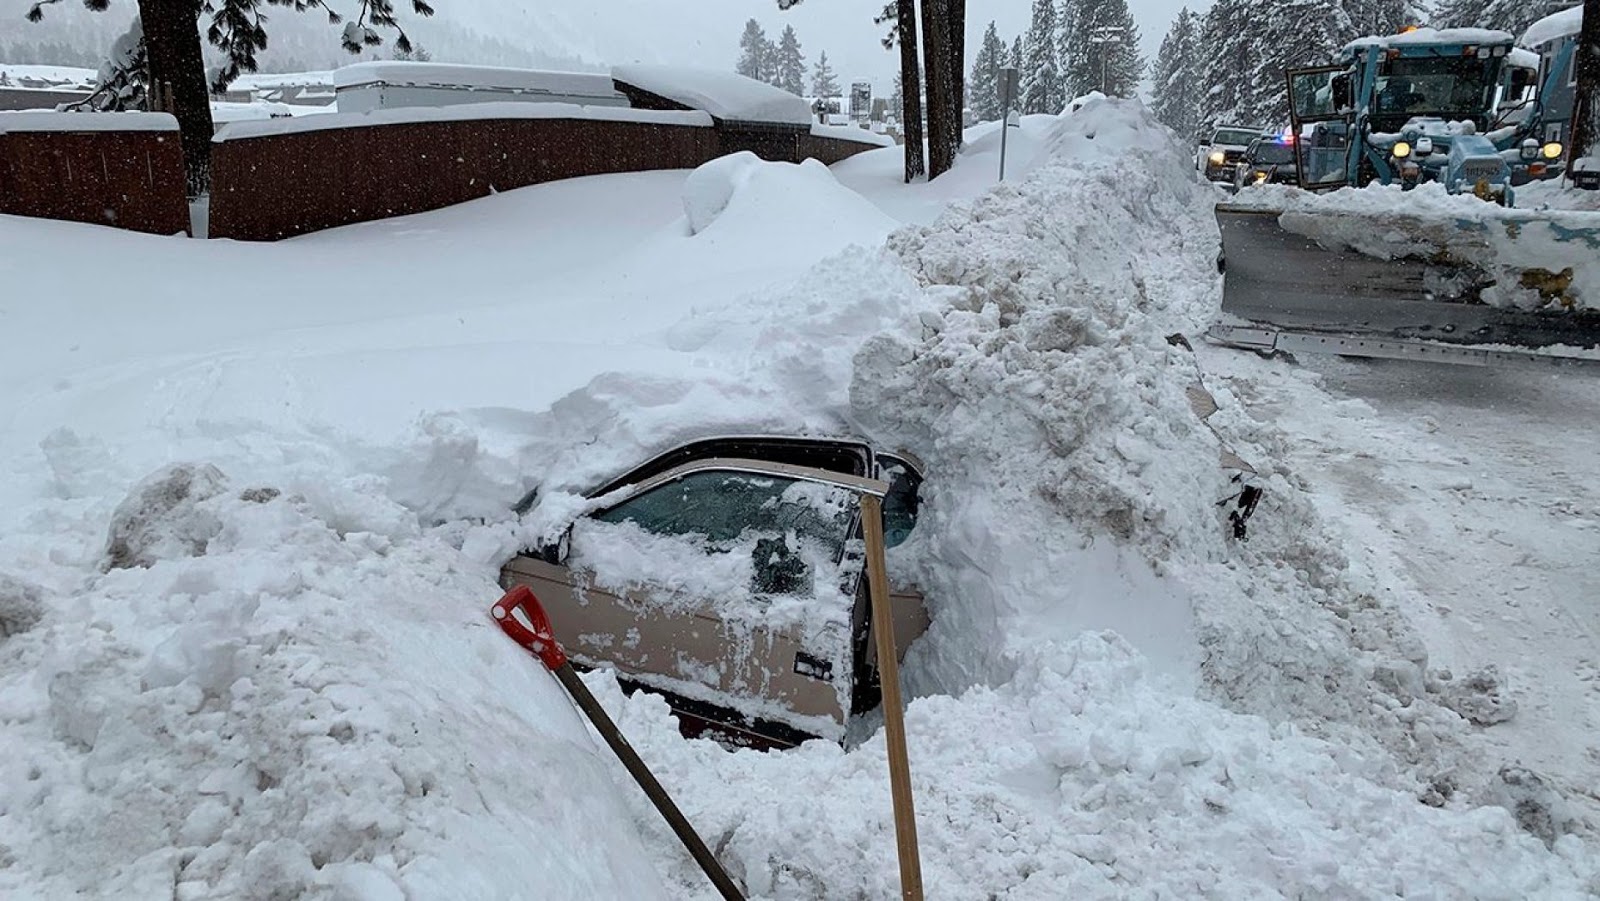 Село качки занесенное снегом. Машину засыпало снегом. Машина завалена снегом. Откапывает машину. Машина в сугробе.